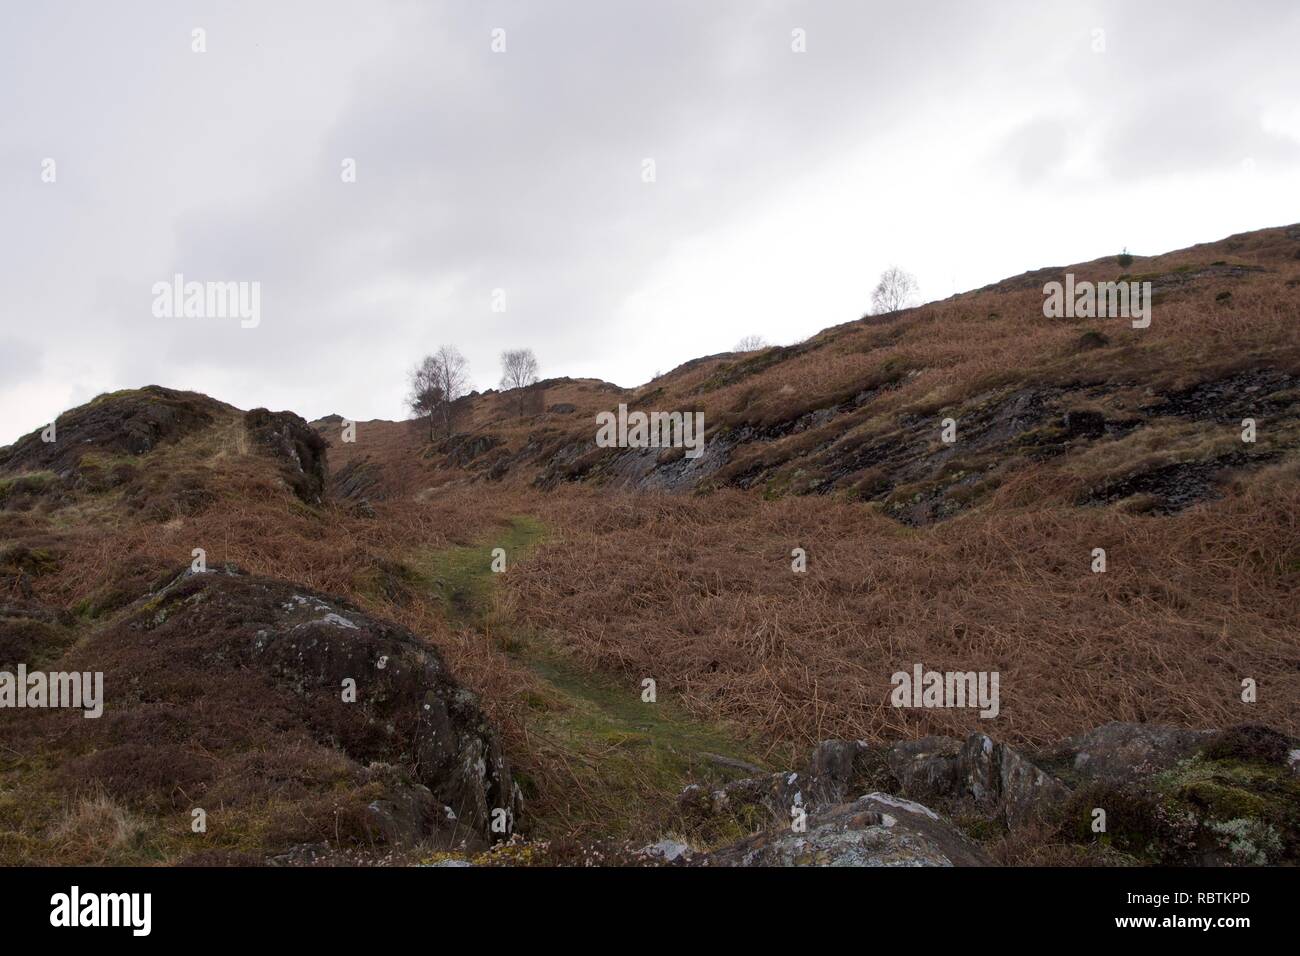 Kleines Tal in einem Moor typisch für den Norden von England und Schottland (englisch Lake District, Cumbria). Braun bracken und Heather mit einem kleinen Bach fl Stockfoto